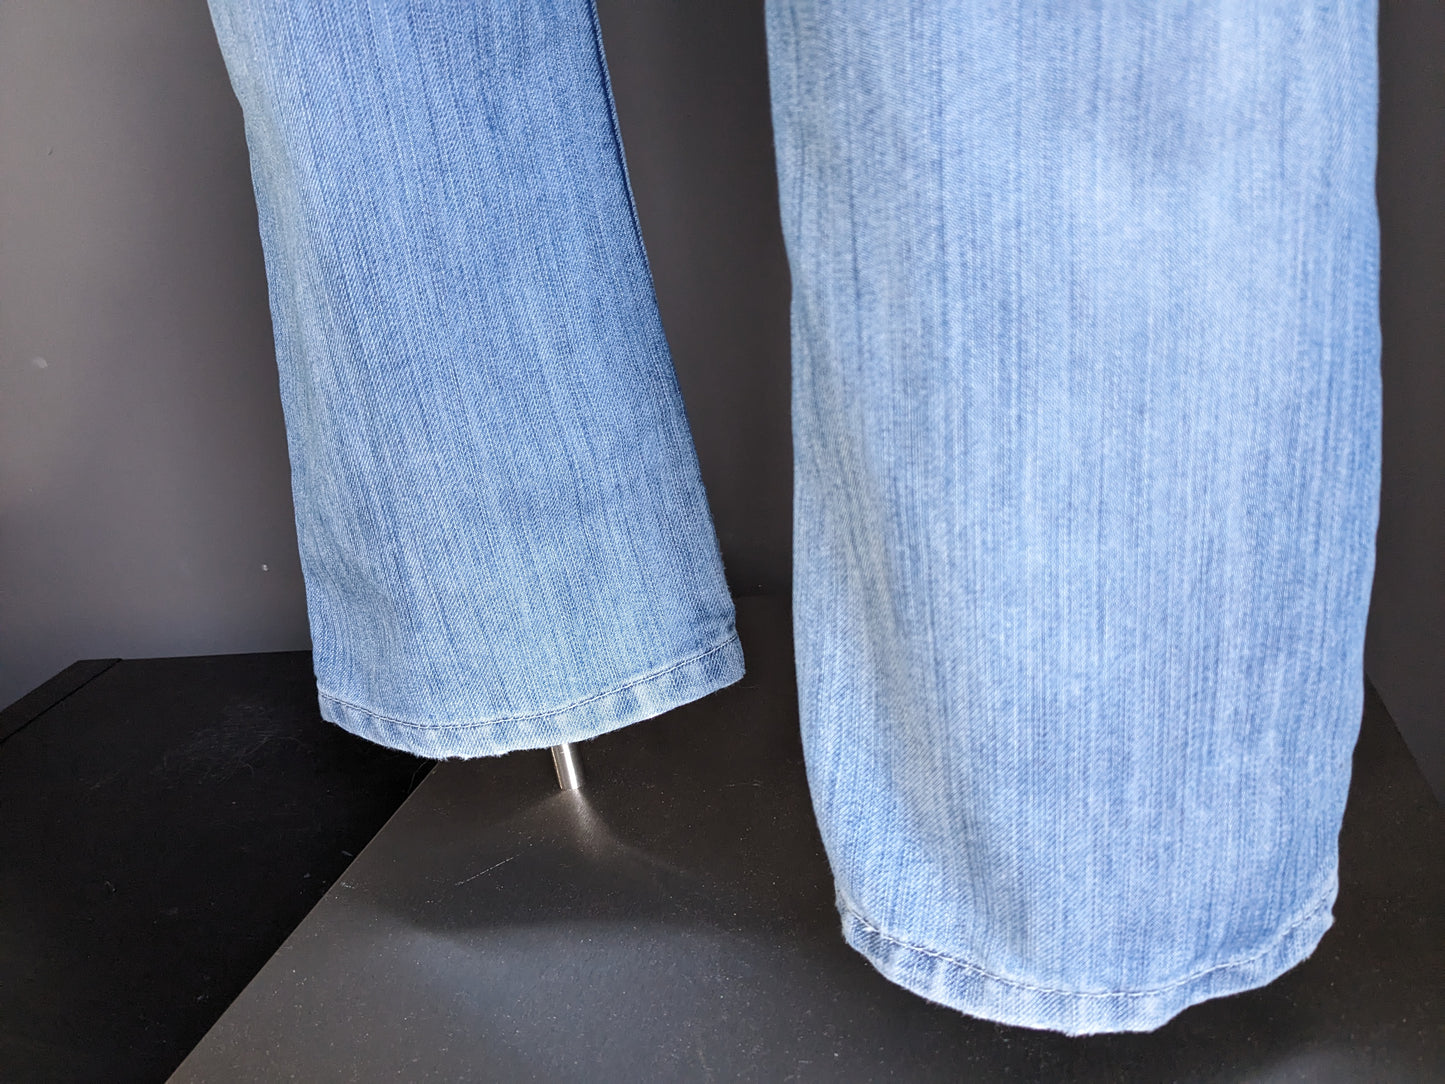 Levi's 511 jeans. Light blue. W36 - L34